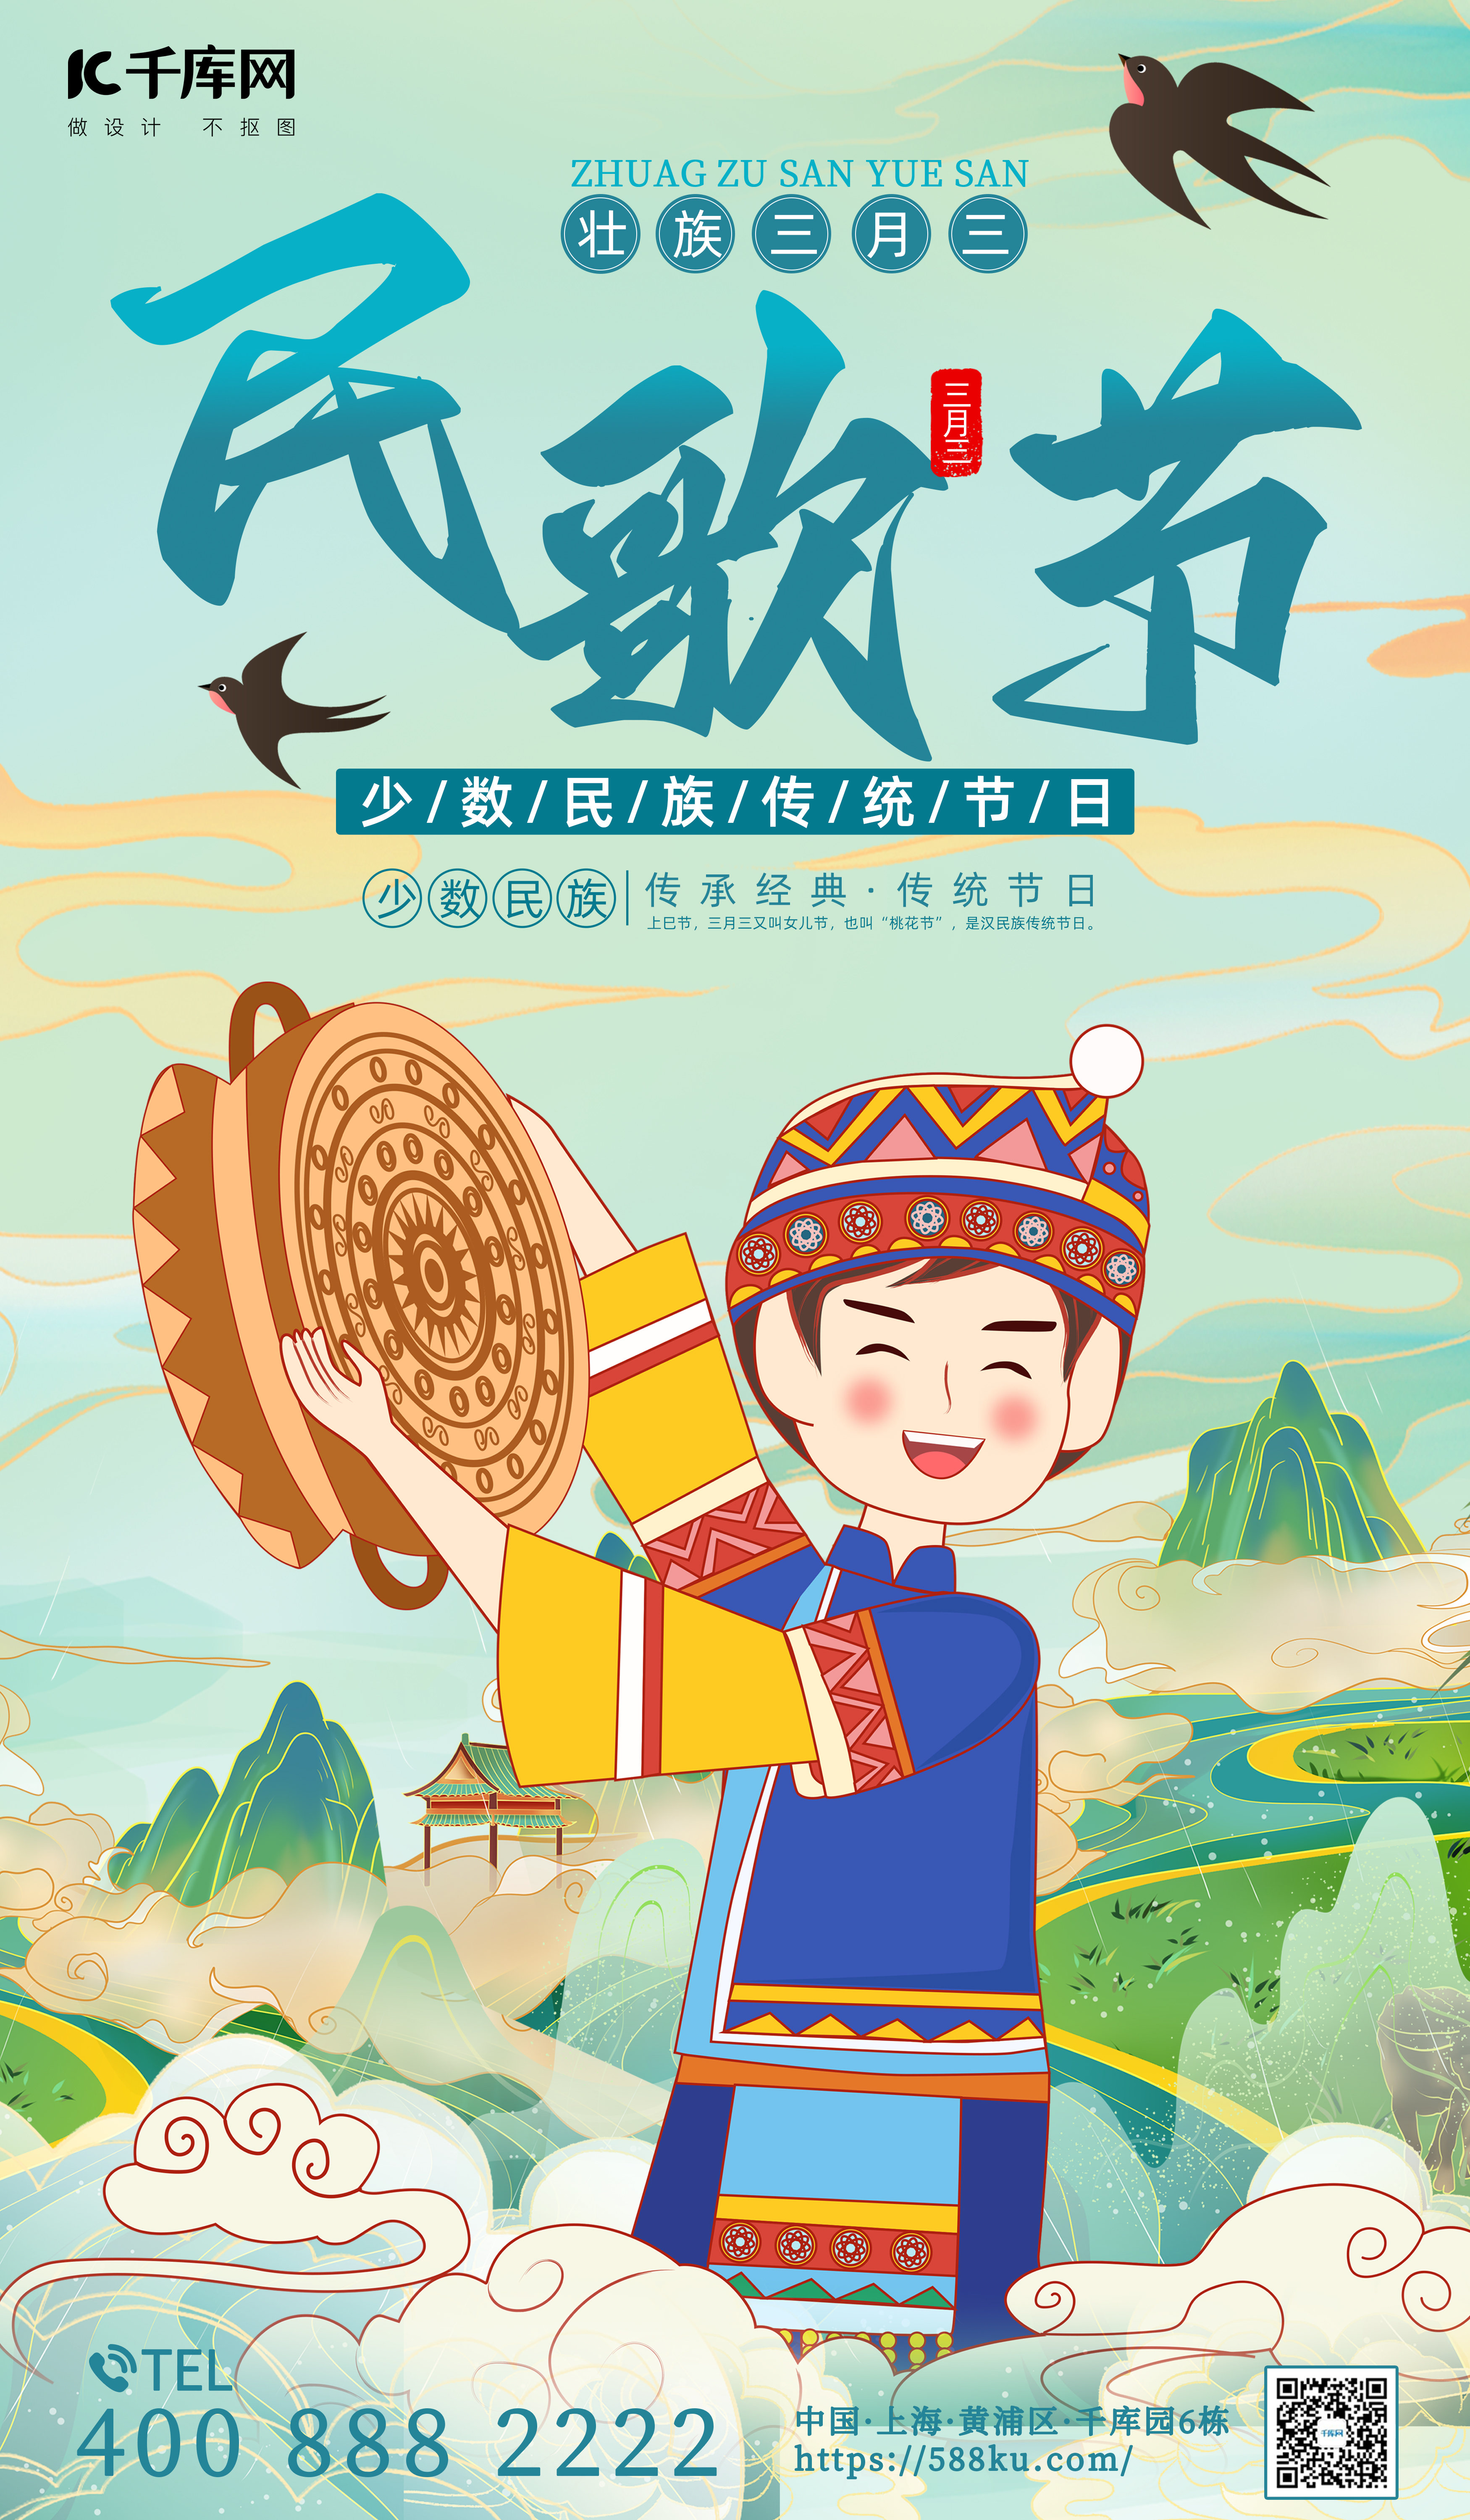 壮族三月三民歌节蓝绿色中国风宣传海报图片